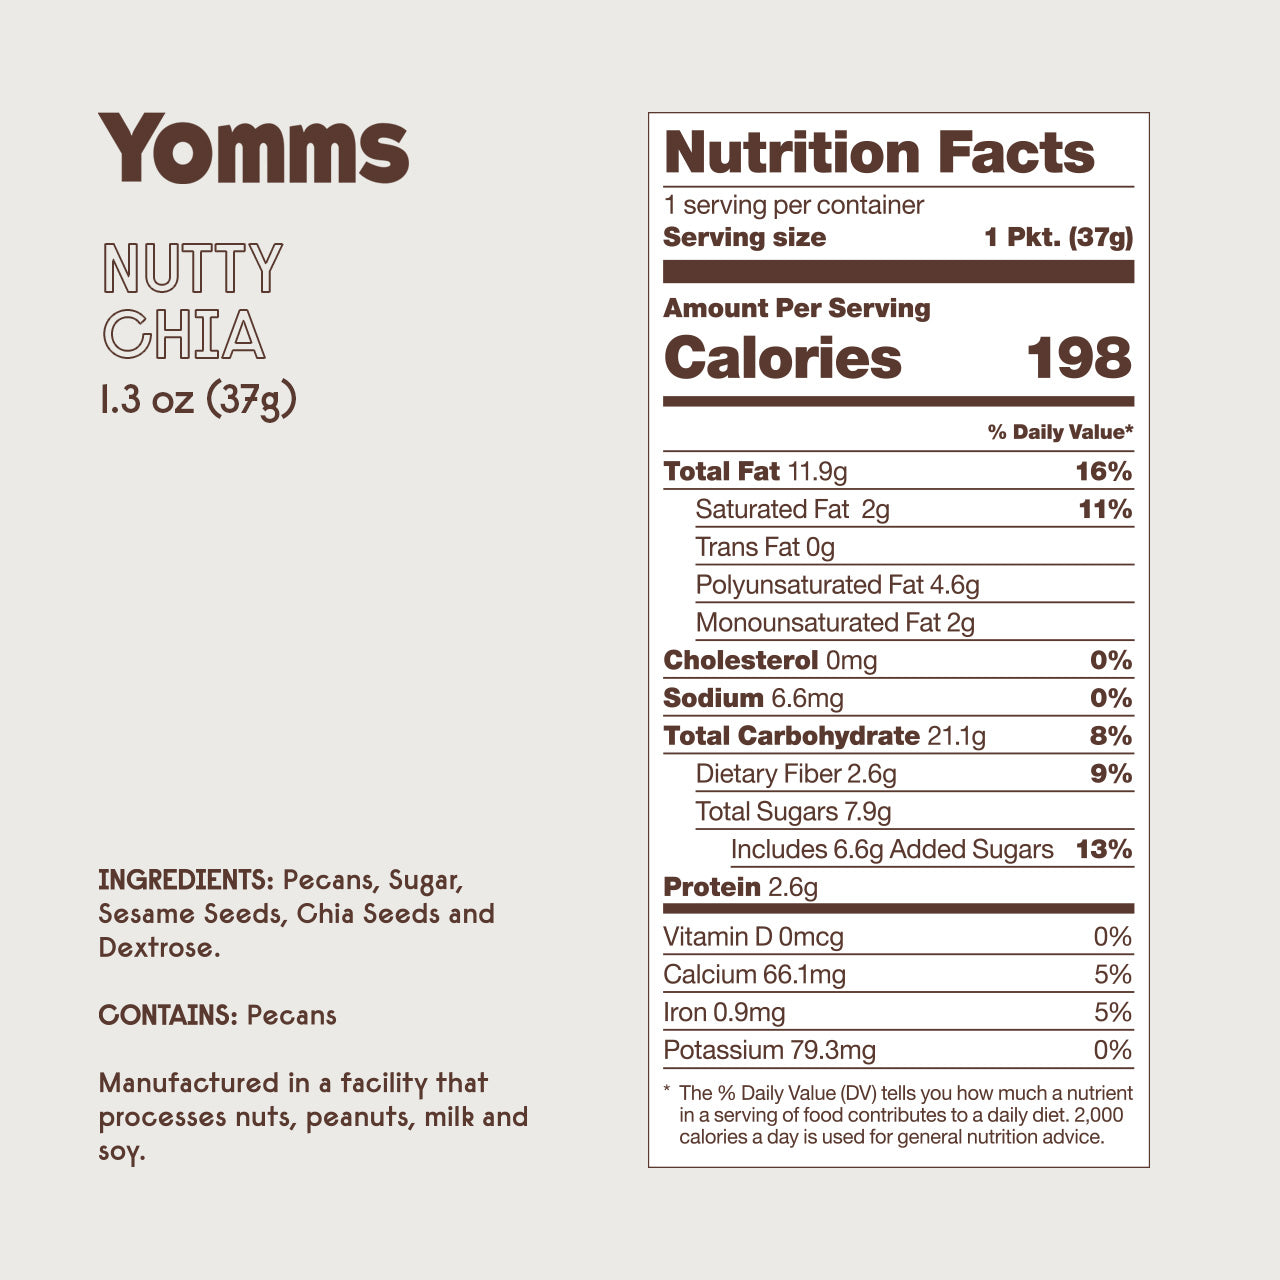 Yomms Nutty Chia 1.3 oz